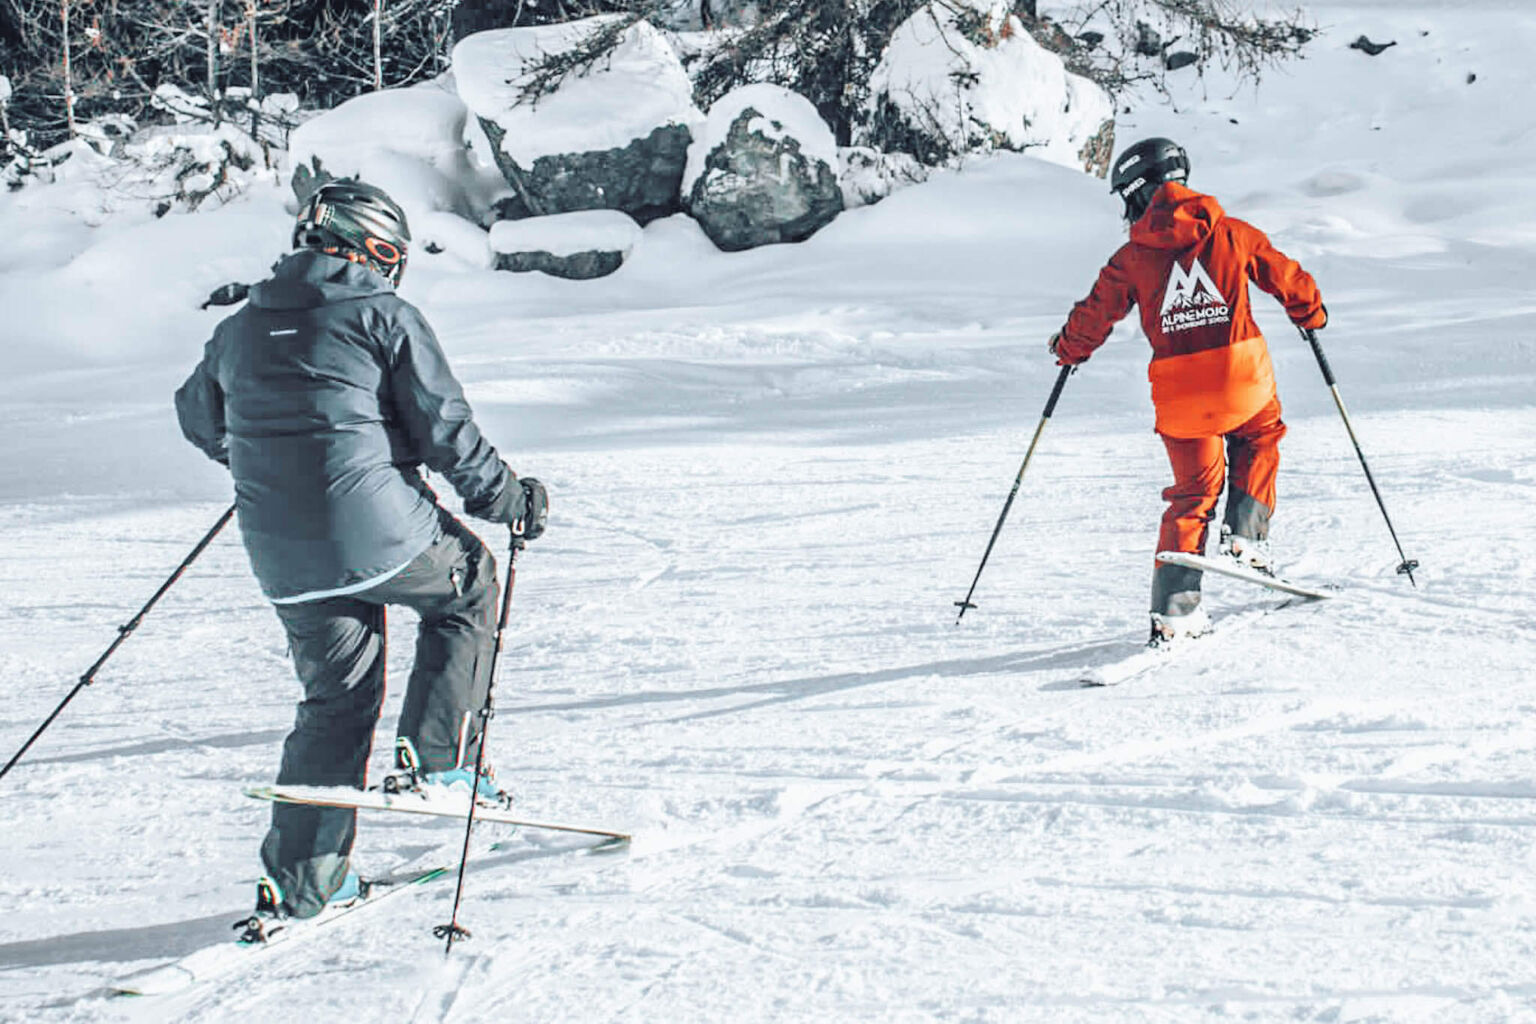 Beginner ski lessons in Verbier & Nendaz